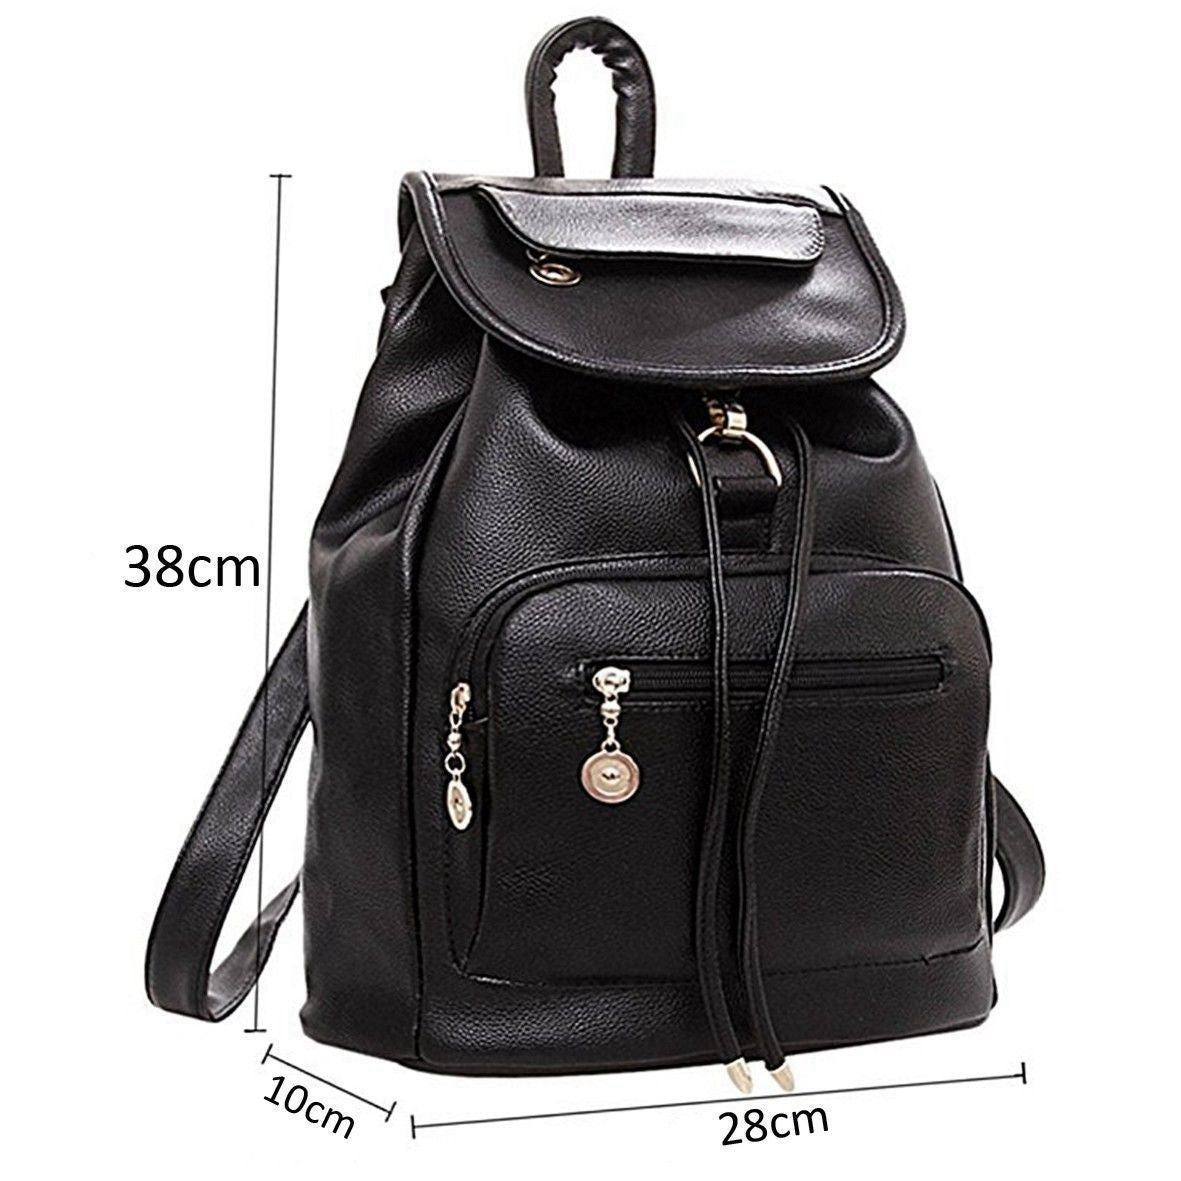 Hot sale Lady Women Leather Backpack School Rucksack College Shoulder Satchel Travel Bag - ebowsos